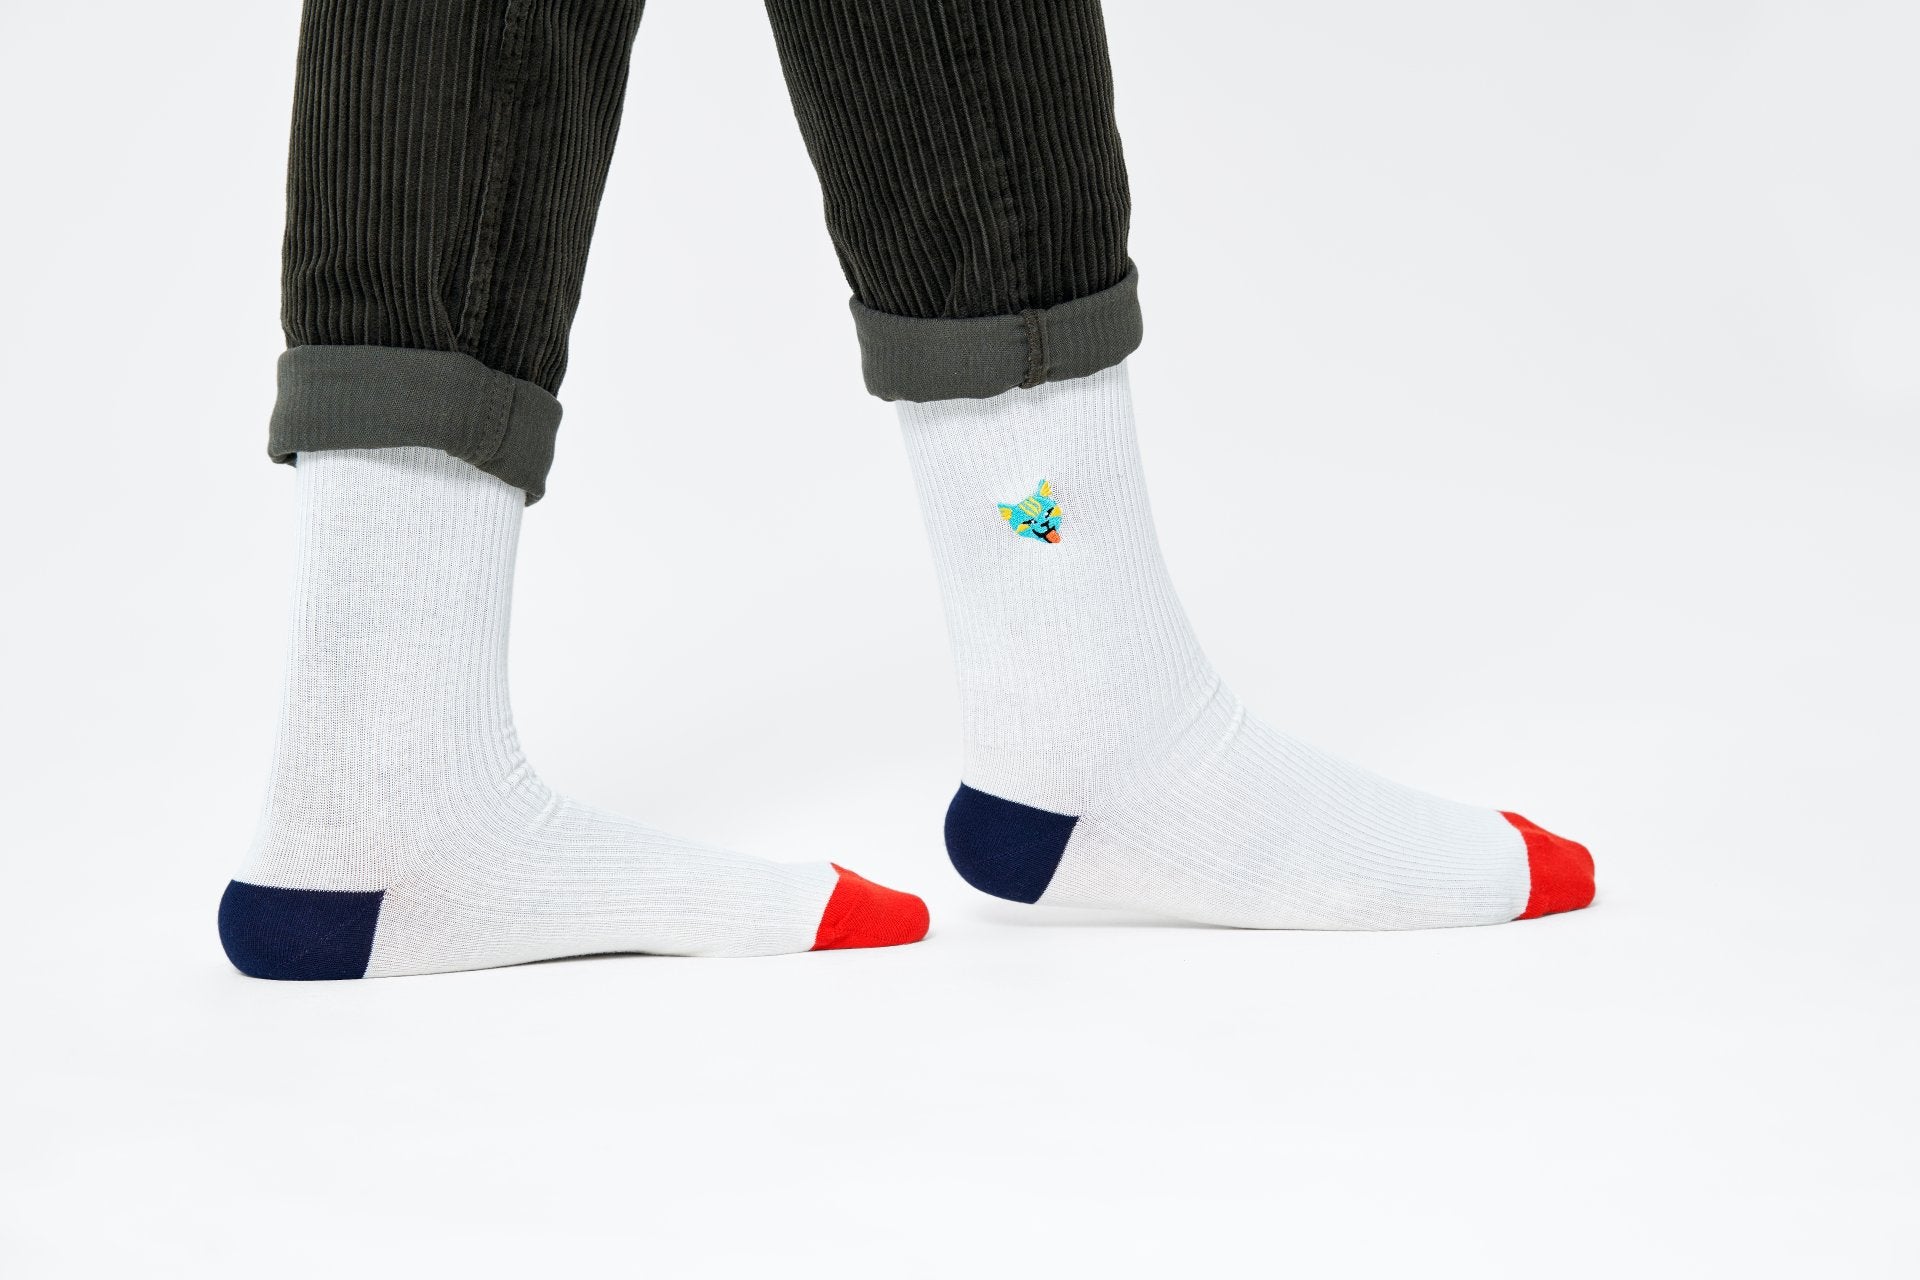 Bílé vroubkované ponožky Happy Socks s vyšitou kočkou, vzor Embroidery Cat